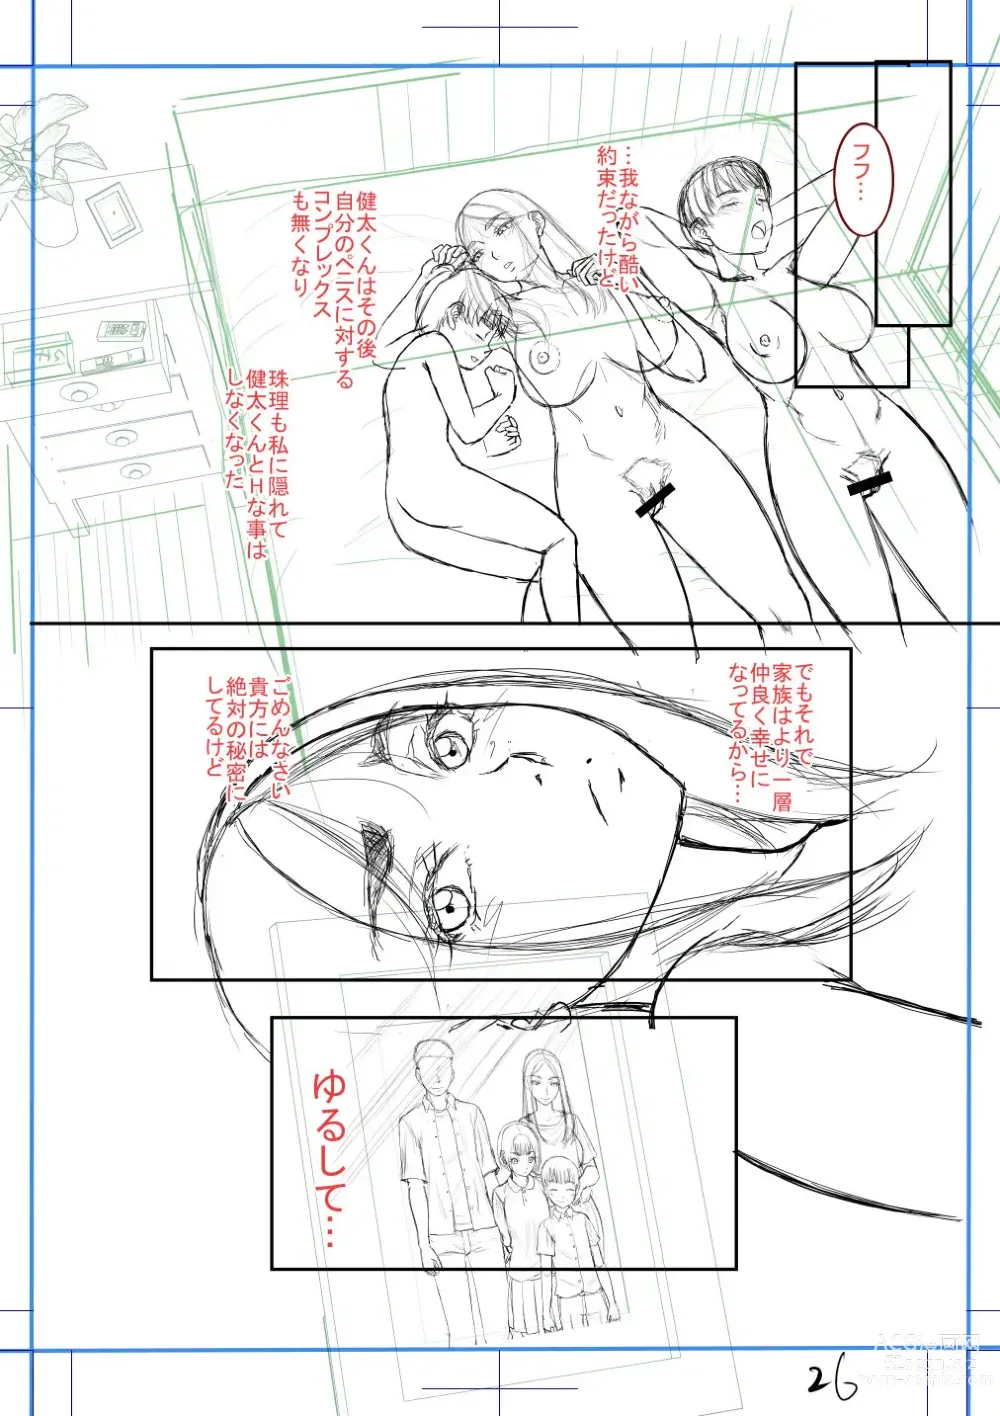 Page 235 of manga Boku no Kanojo ga...